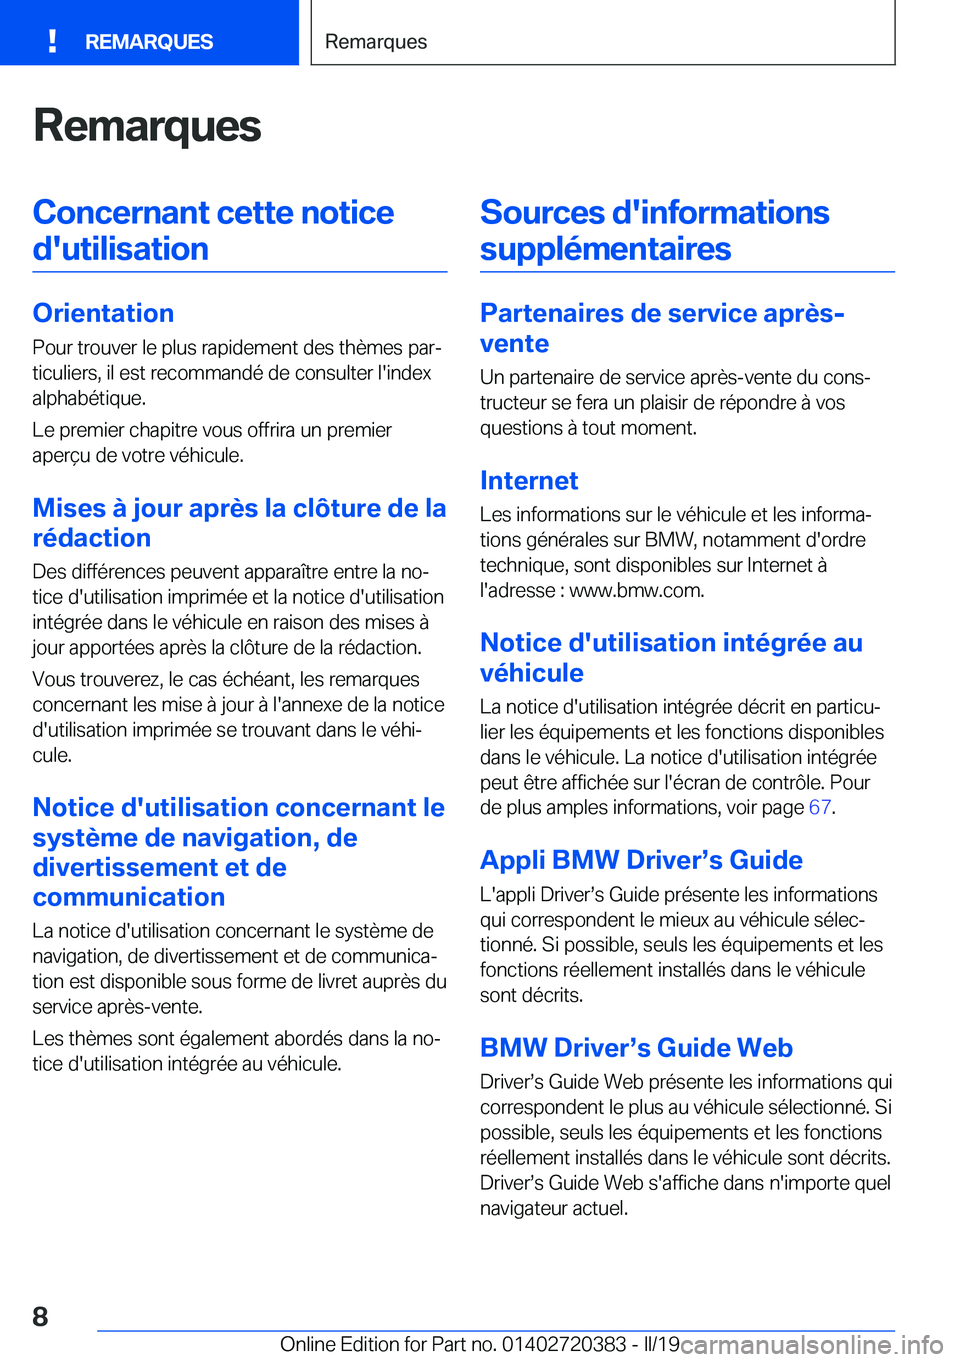 BMW X2 2019  Notices Demploi (in French) �R�e�m�a�r�q�u�e�s�C�o�n�c�e�r�n�a�n�t��c�e�t�t�e��n�o�t�i�c�e�d�'�u�t�i�l�i�s�a�t�i�o�n
�O�r�i�e�n�t�a�t�i�o�n �P�o�u�r��t�r�o�u�v�e�r��l�e��p�l�u�s��r�a�p�i�d�e�m�e�n�t��d�e�s��t�h�è�m�